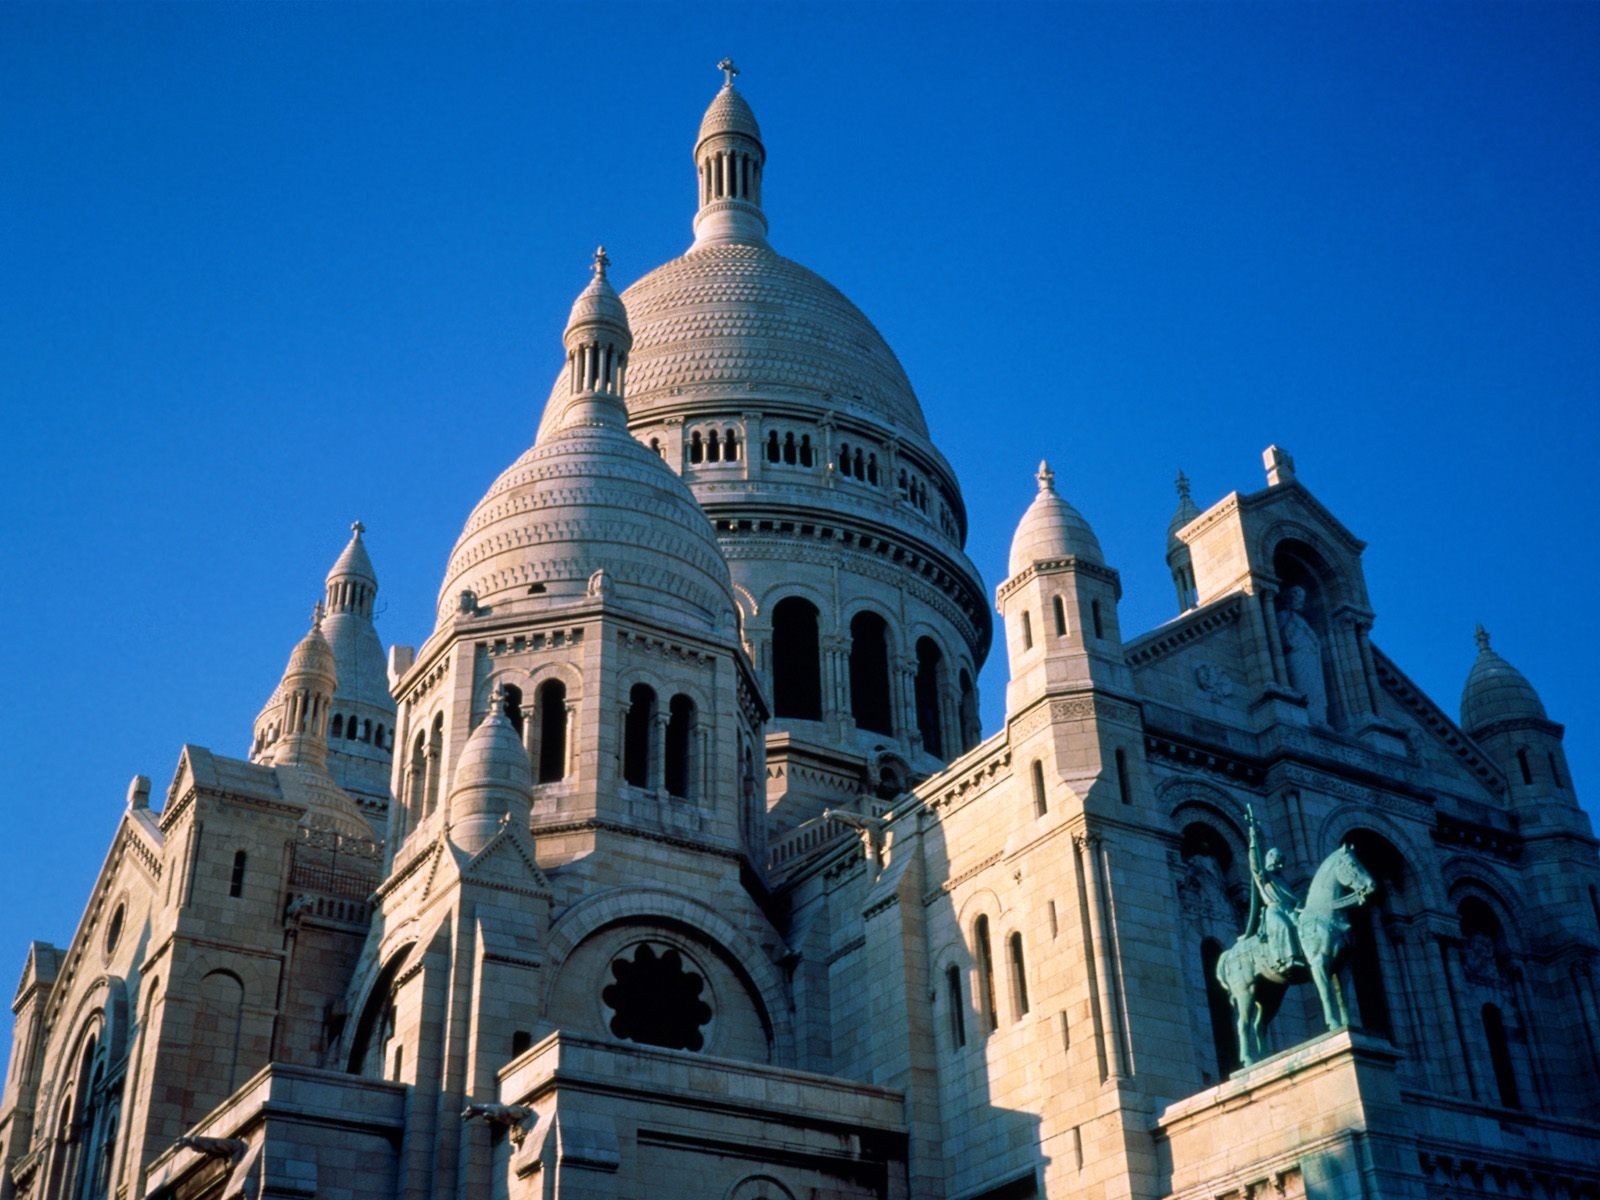 General 1600x1200 Paris Sacre-Coeur France city building architecture landmark